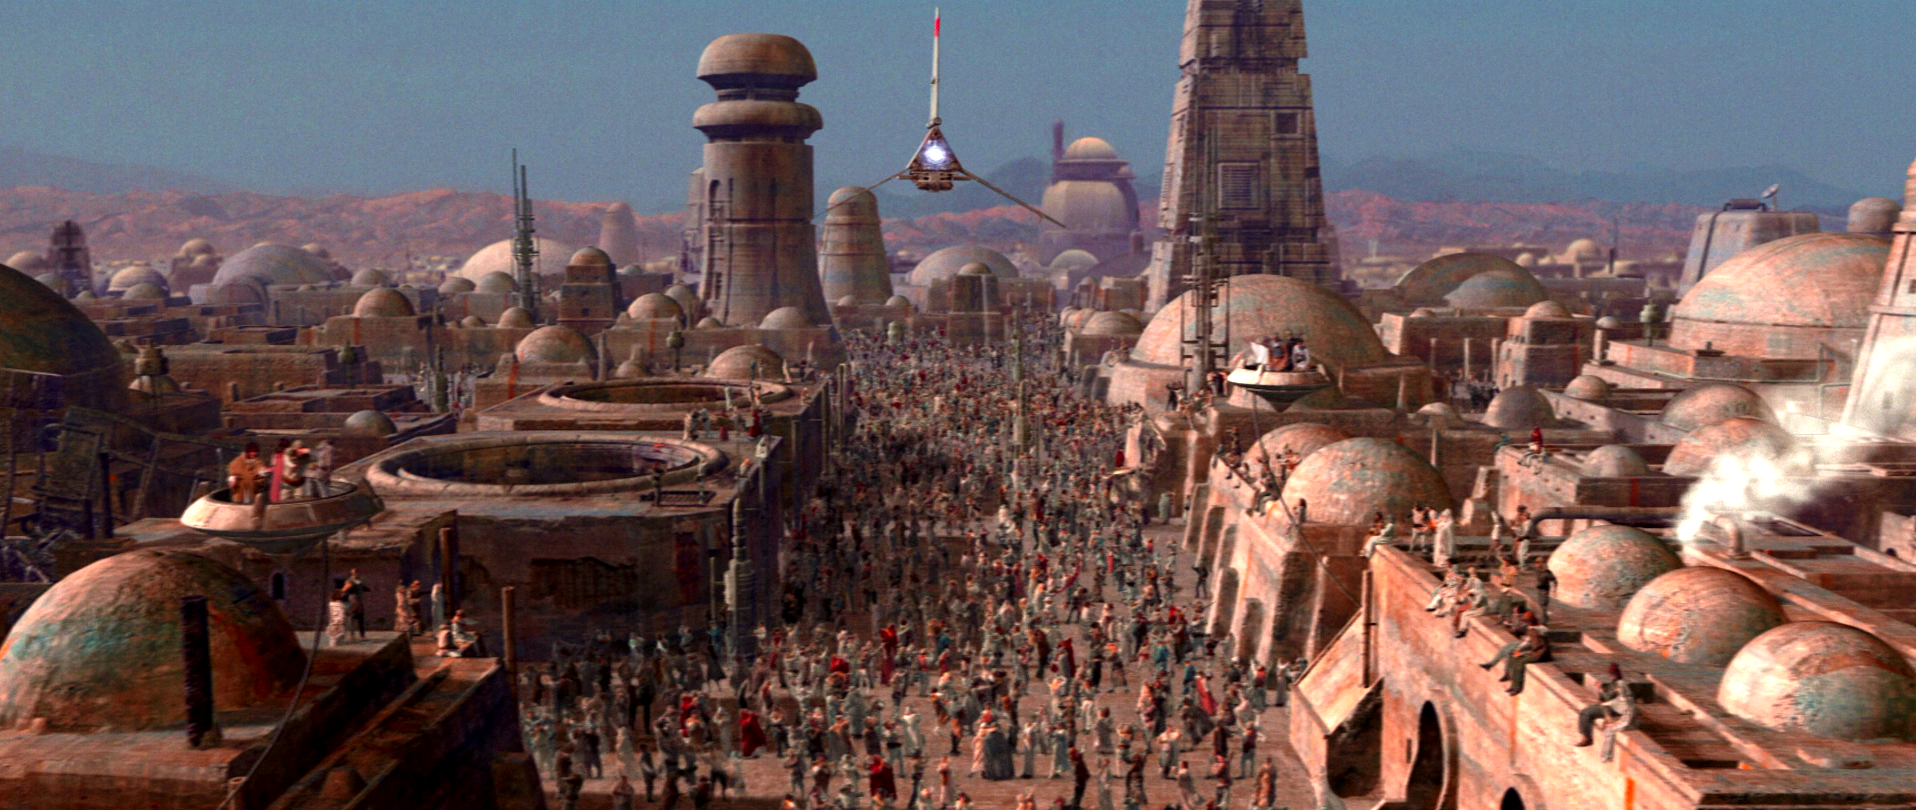 Планета Татуин Звездные войны город